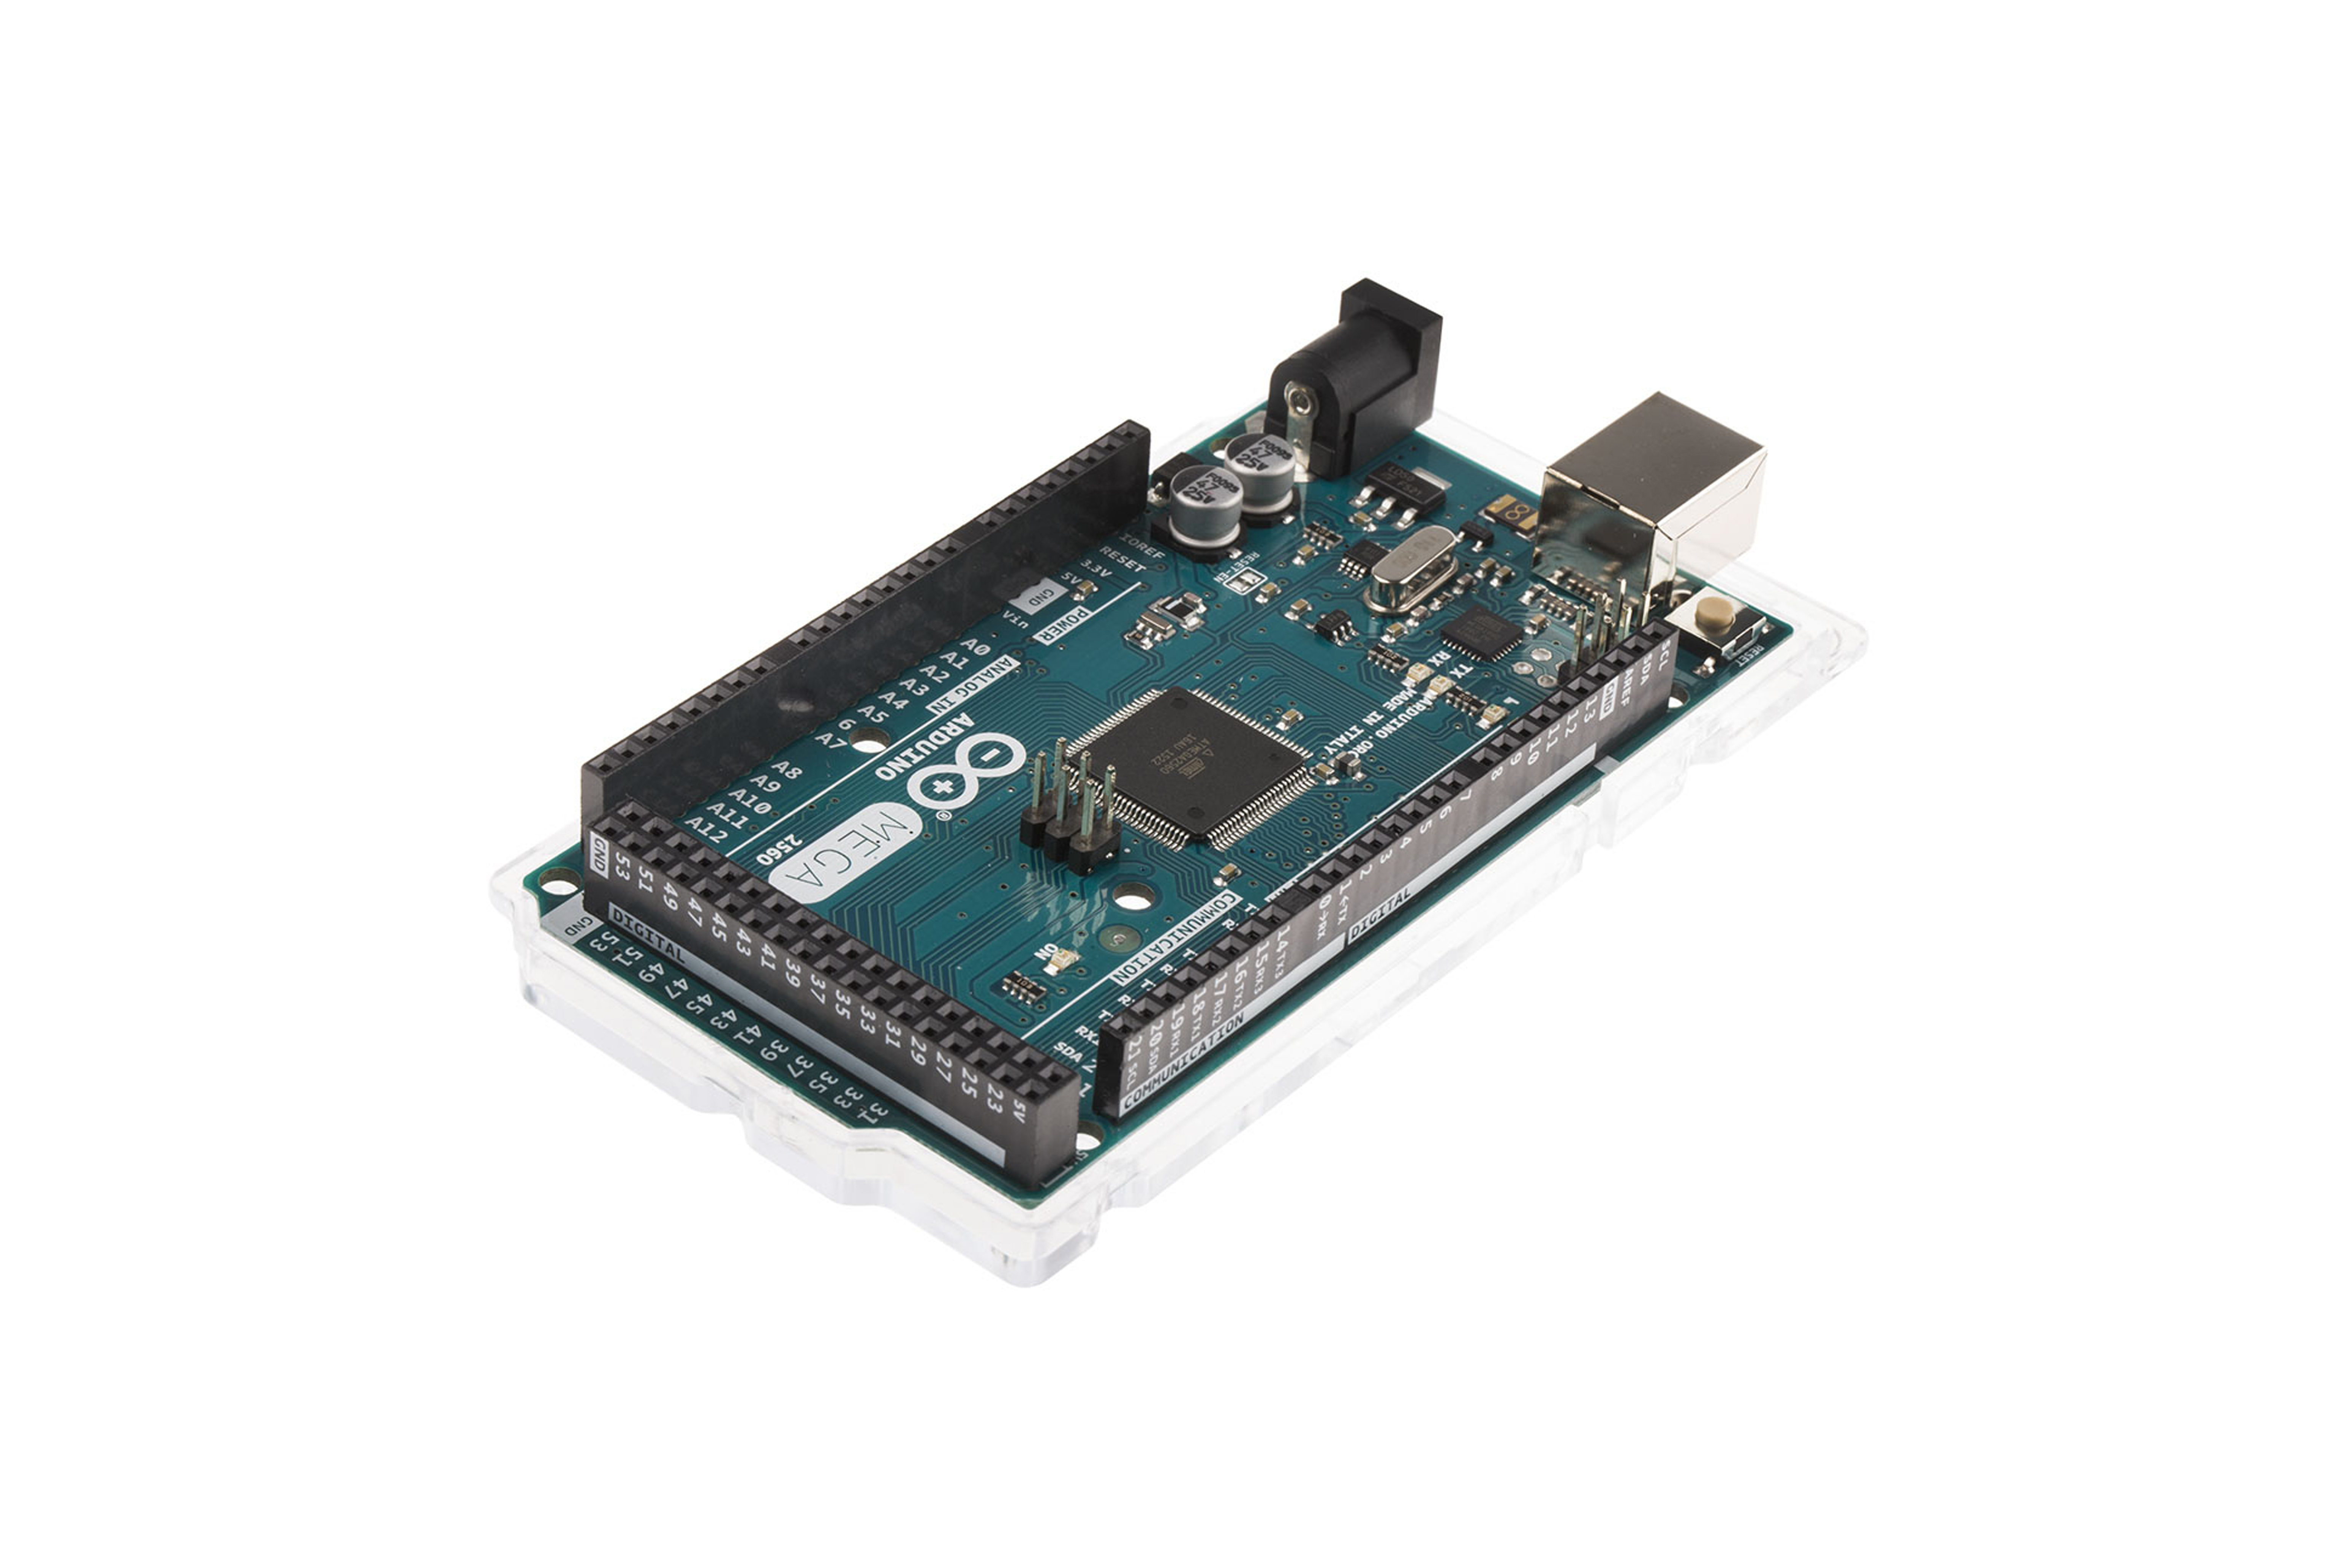 Arduino Mega 2560 Microcontroller Rev3